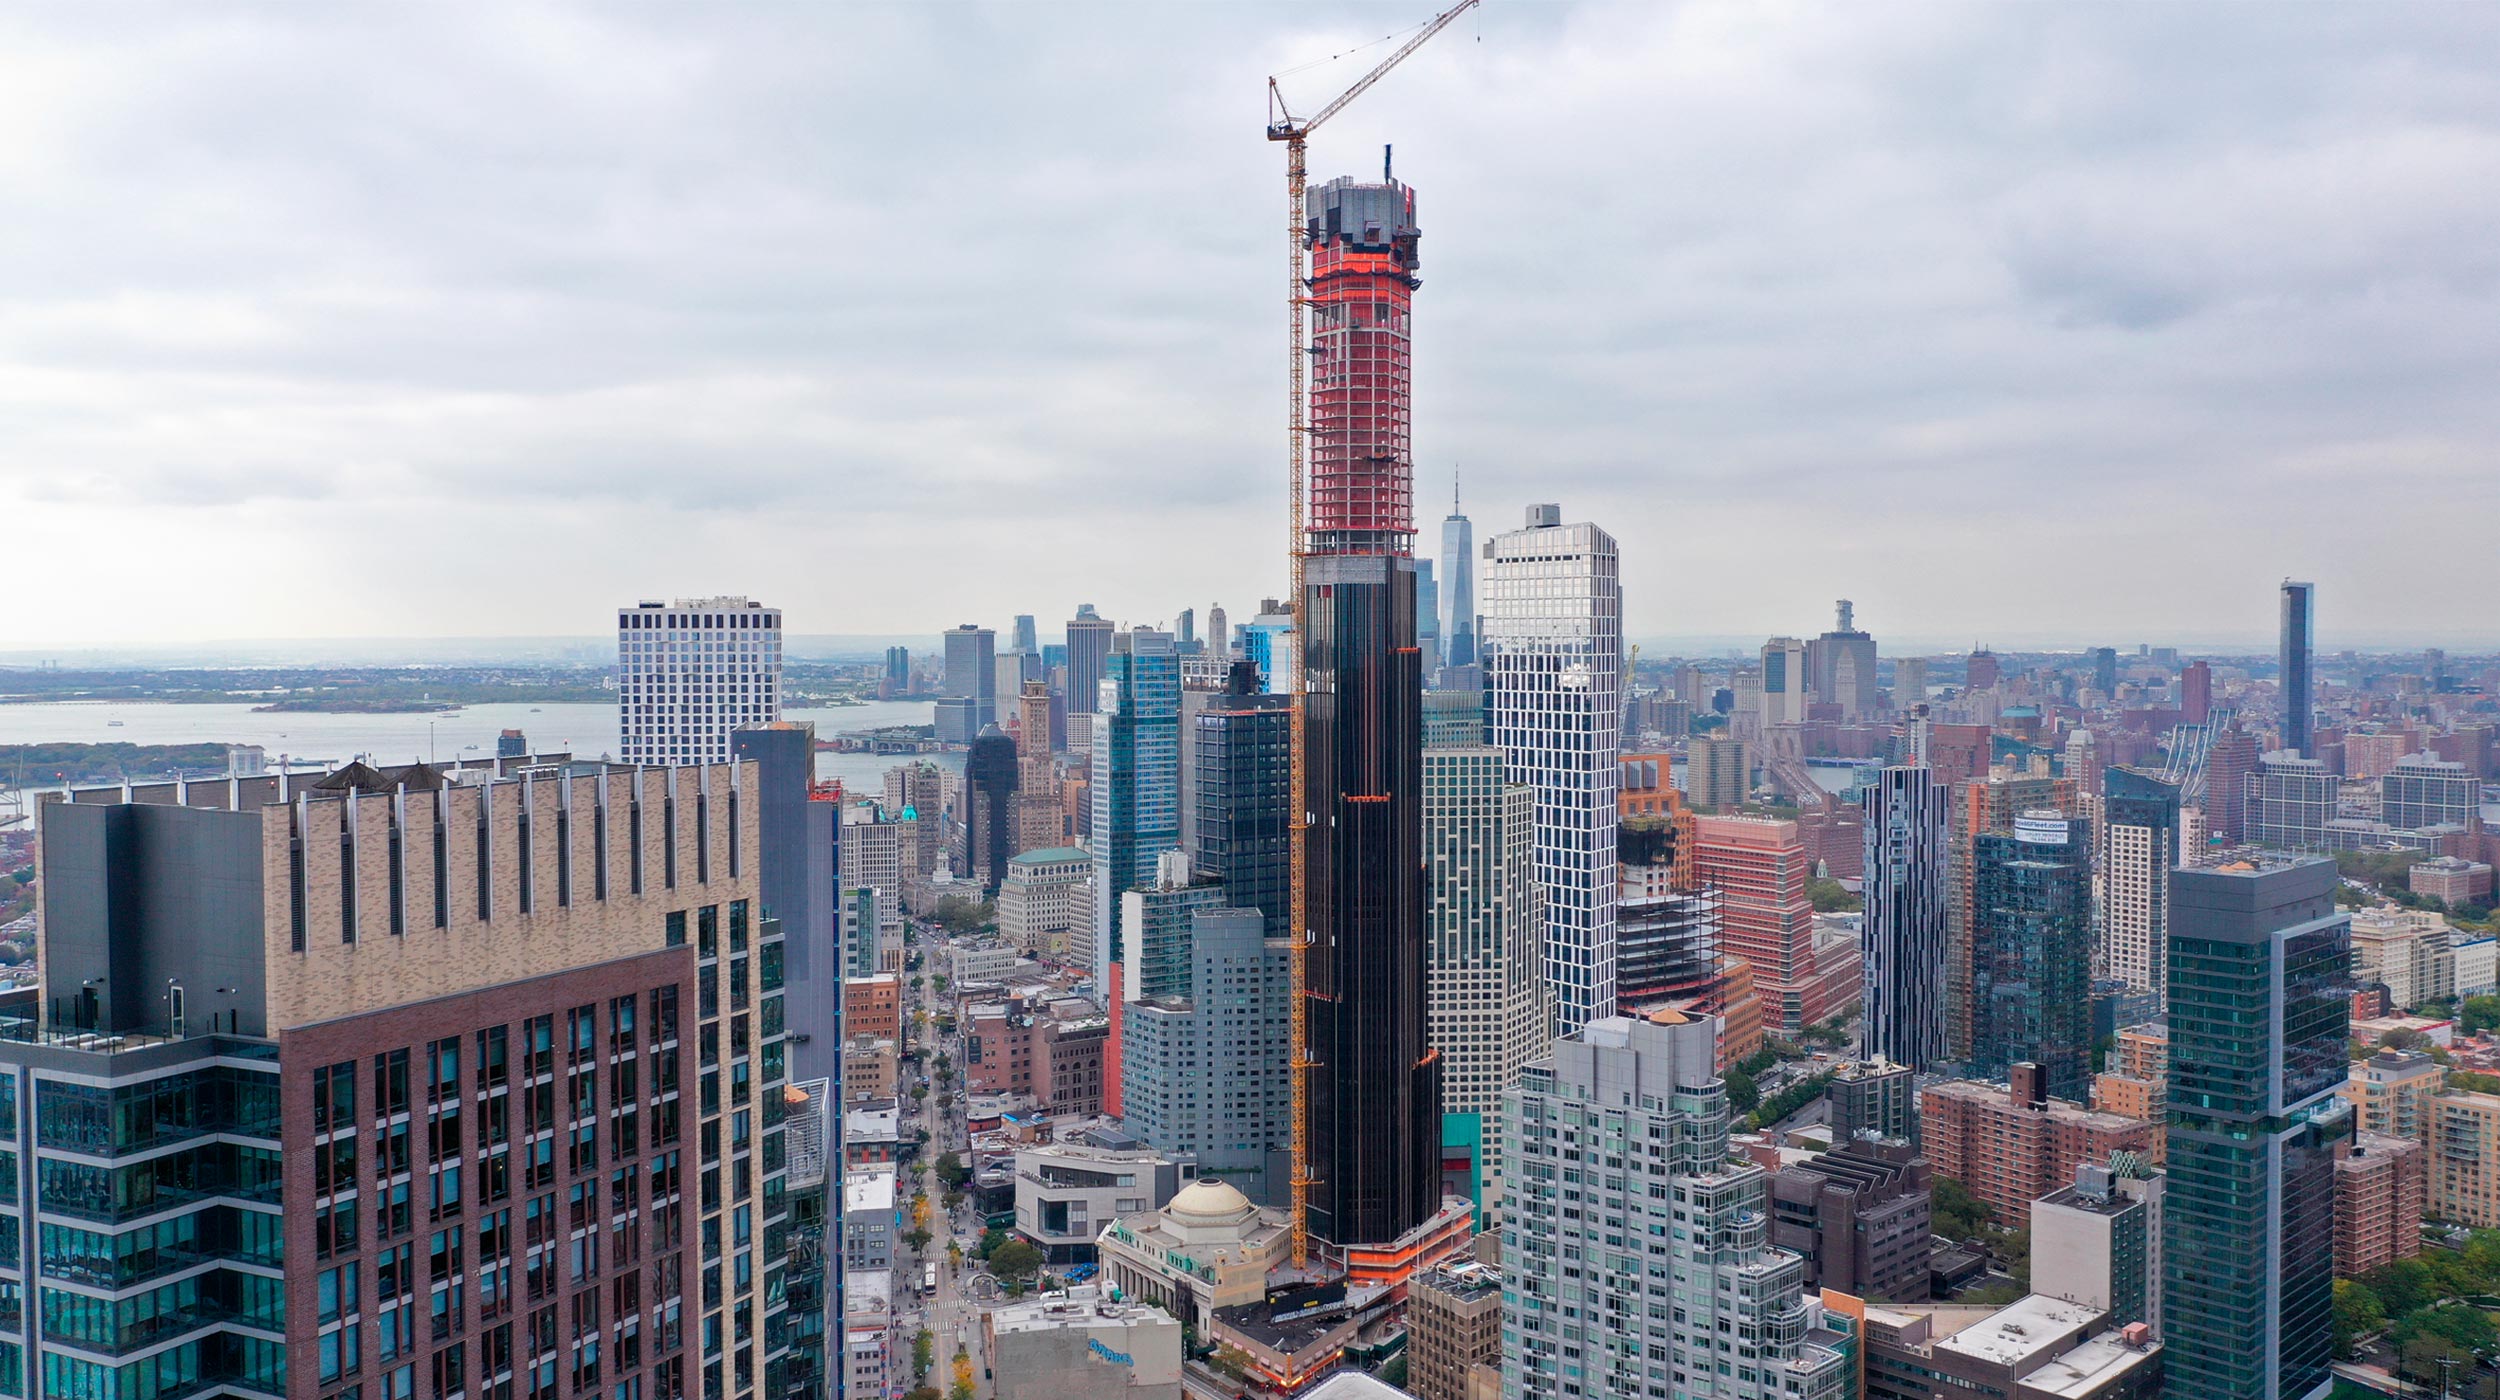 The Brooklyn Tower es una estructura de gran altura que se elevará 325 m y 73 pisos, convirtiéndose en el edificio más alto de Brooklyn. Está previsto que el rascacielos cuente con más de 500 residencias, además de espacios comerciales.